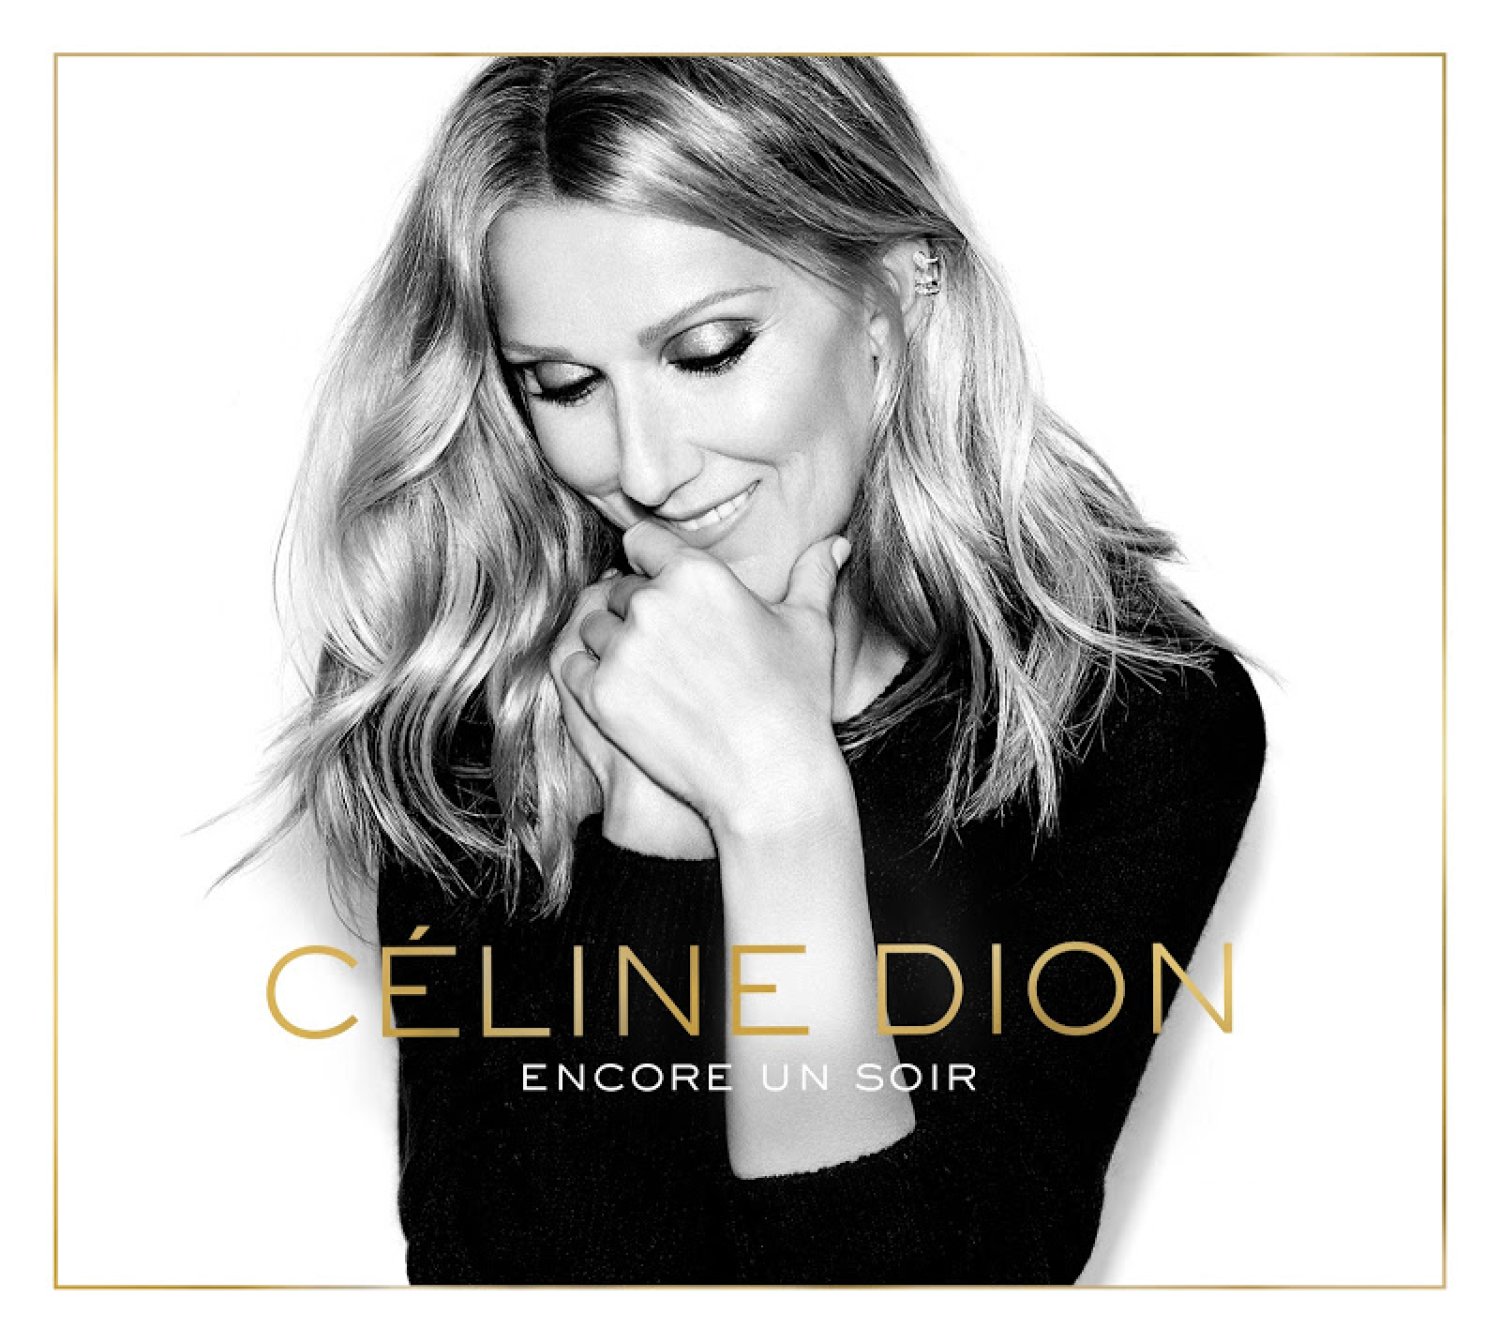 Encore un soir, le nouvel album de Celine Dion